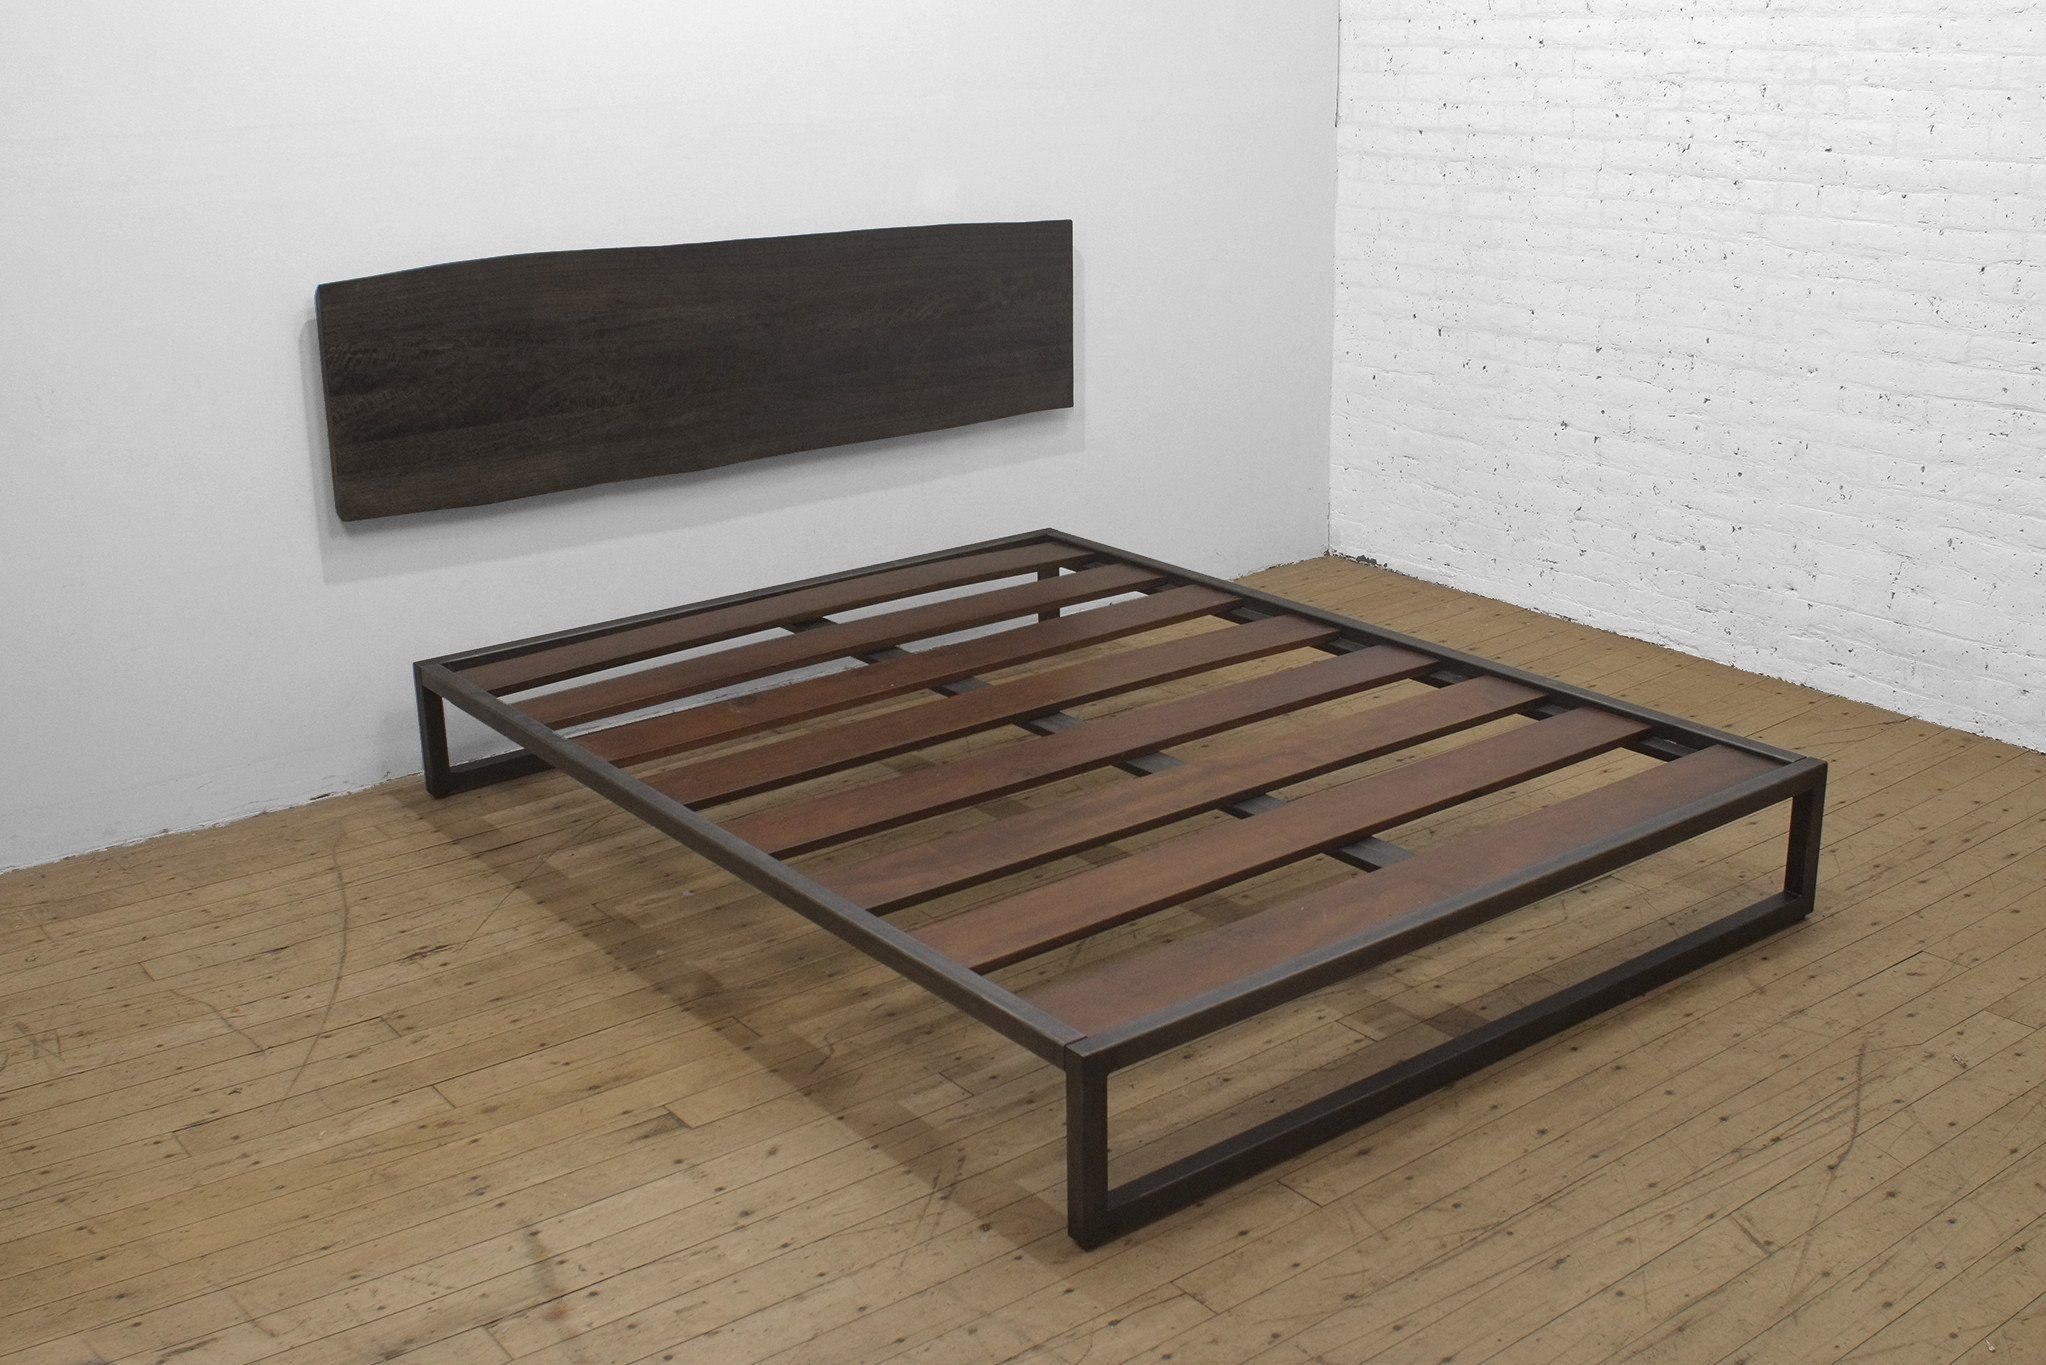 Двуспальная кровать из металла | Форум о строительстве и загородной жизни – FORUMHOUSE